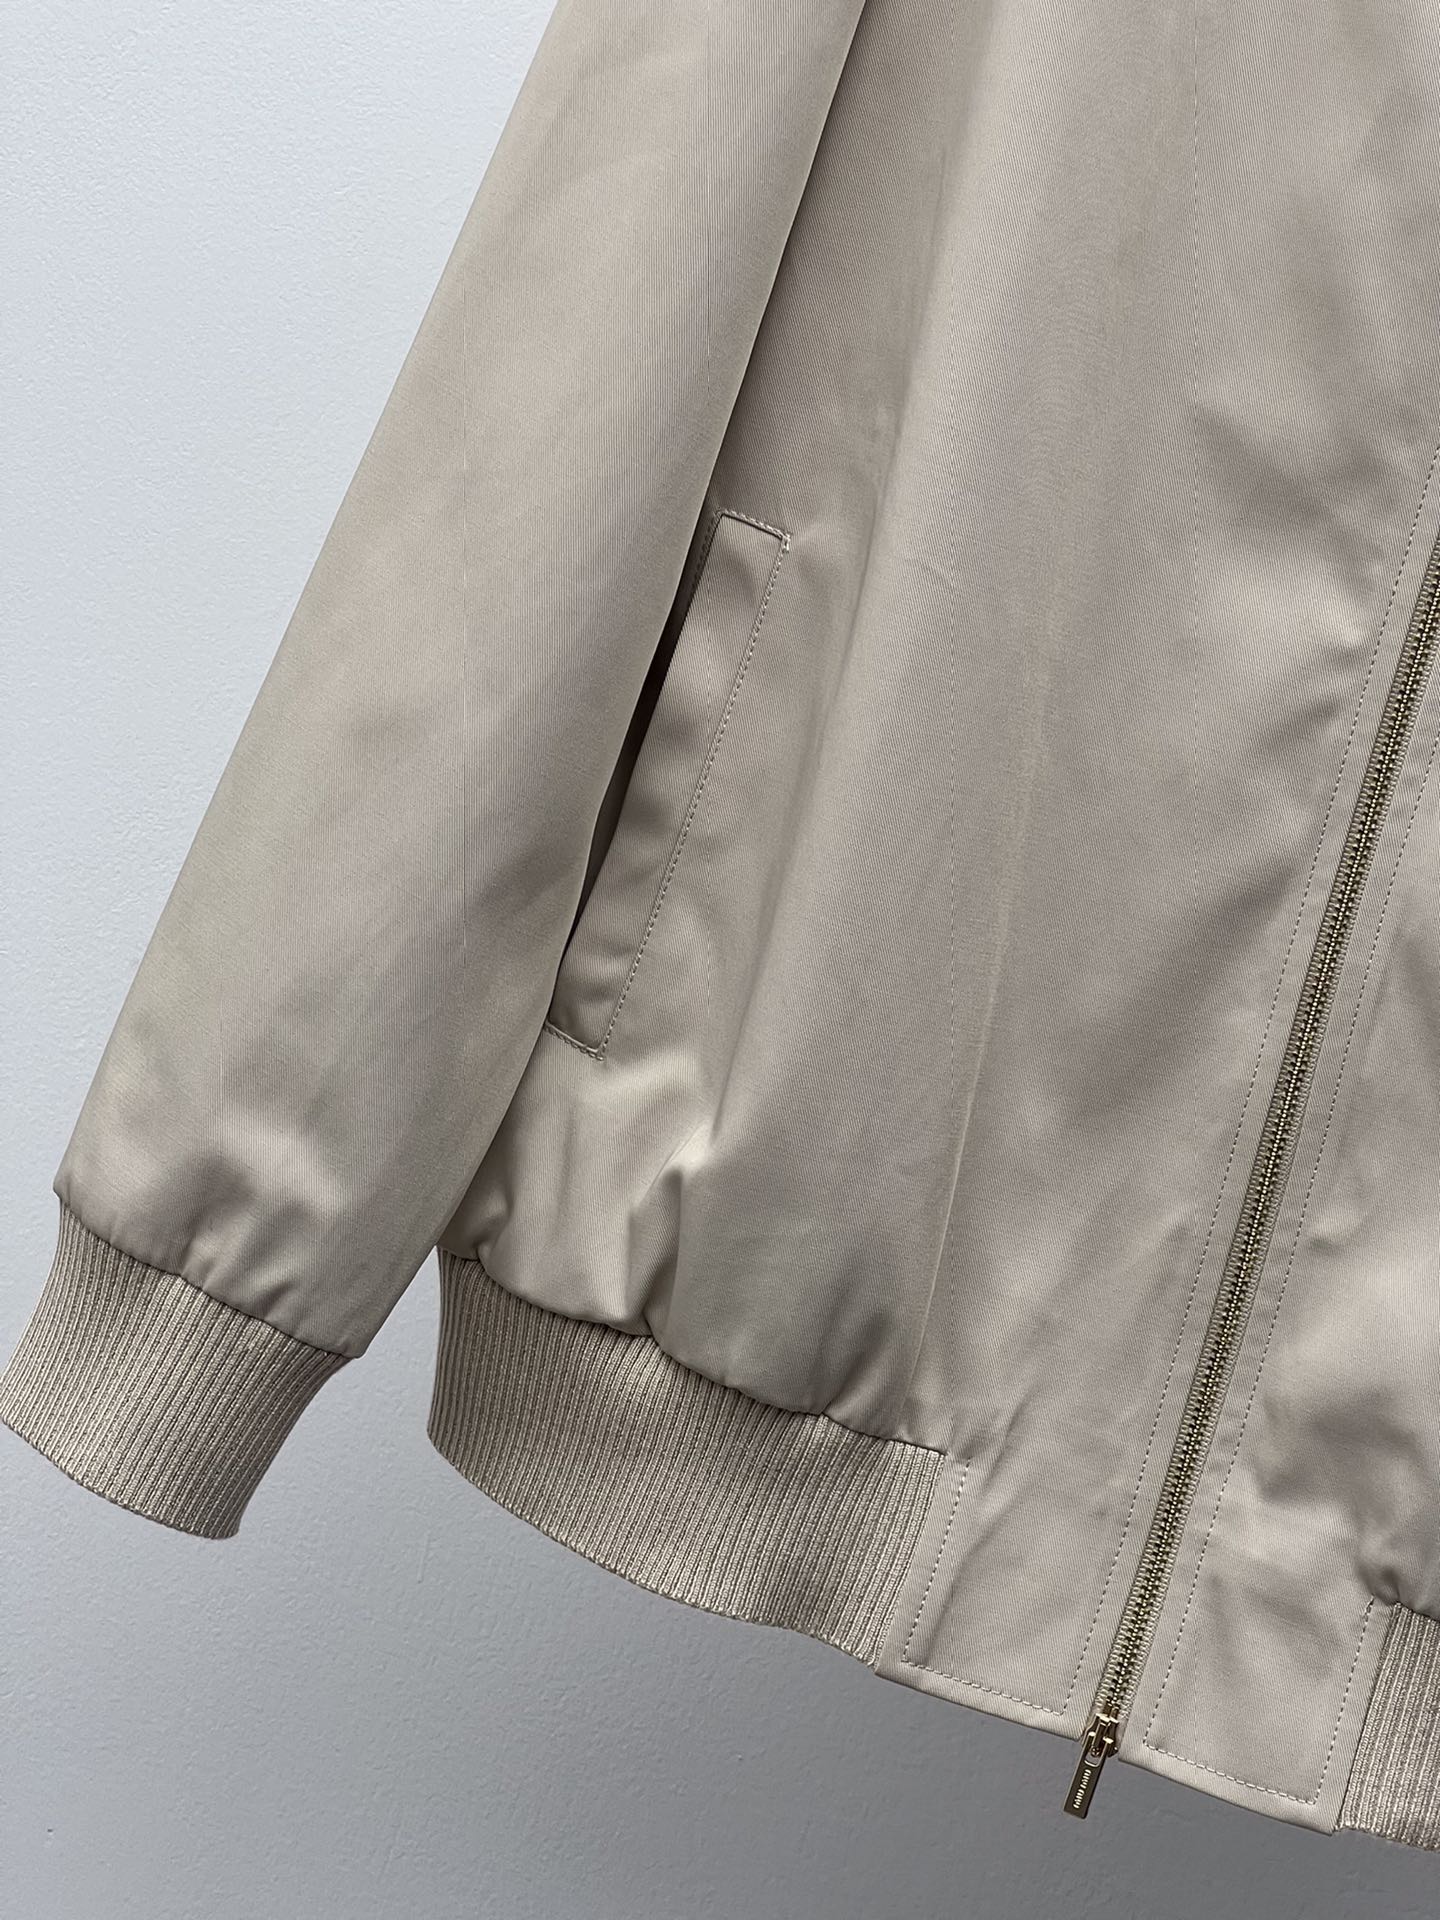 miumi*棉质夹克外套这款棉质夹克诠释休闲简约又不失精致的风格罗纹针织衣领和袖口饰边彰显运动风设计标志